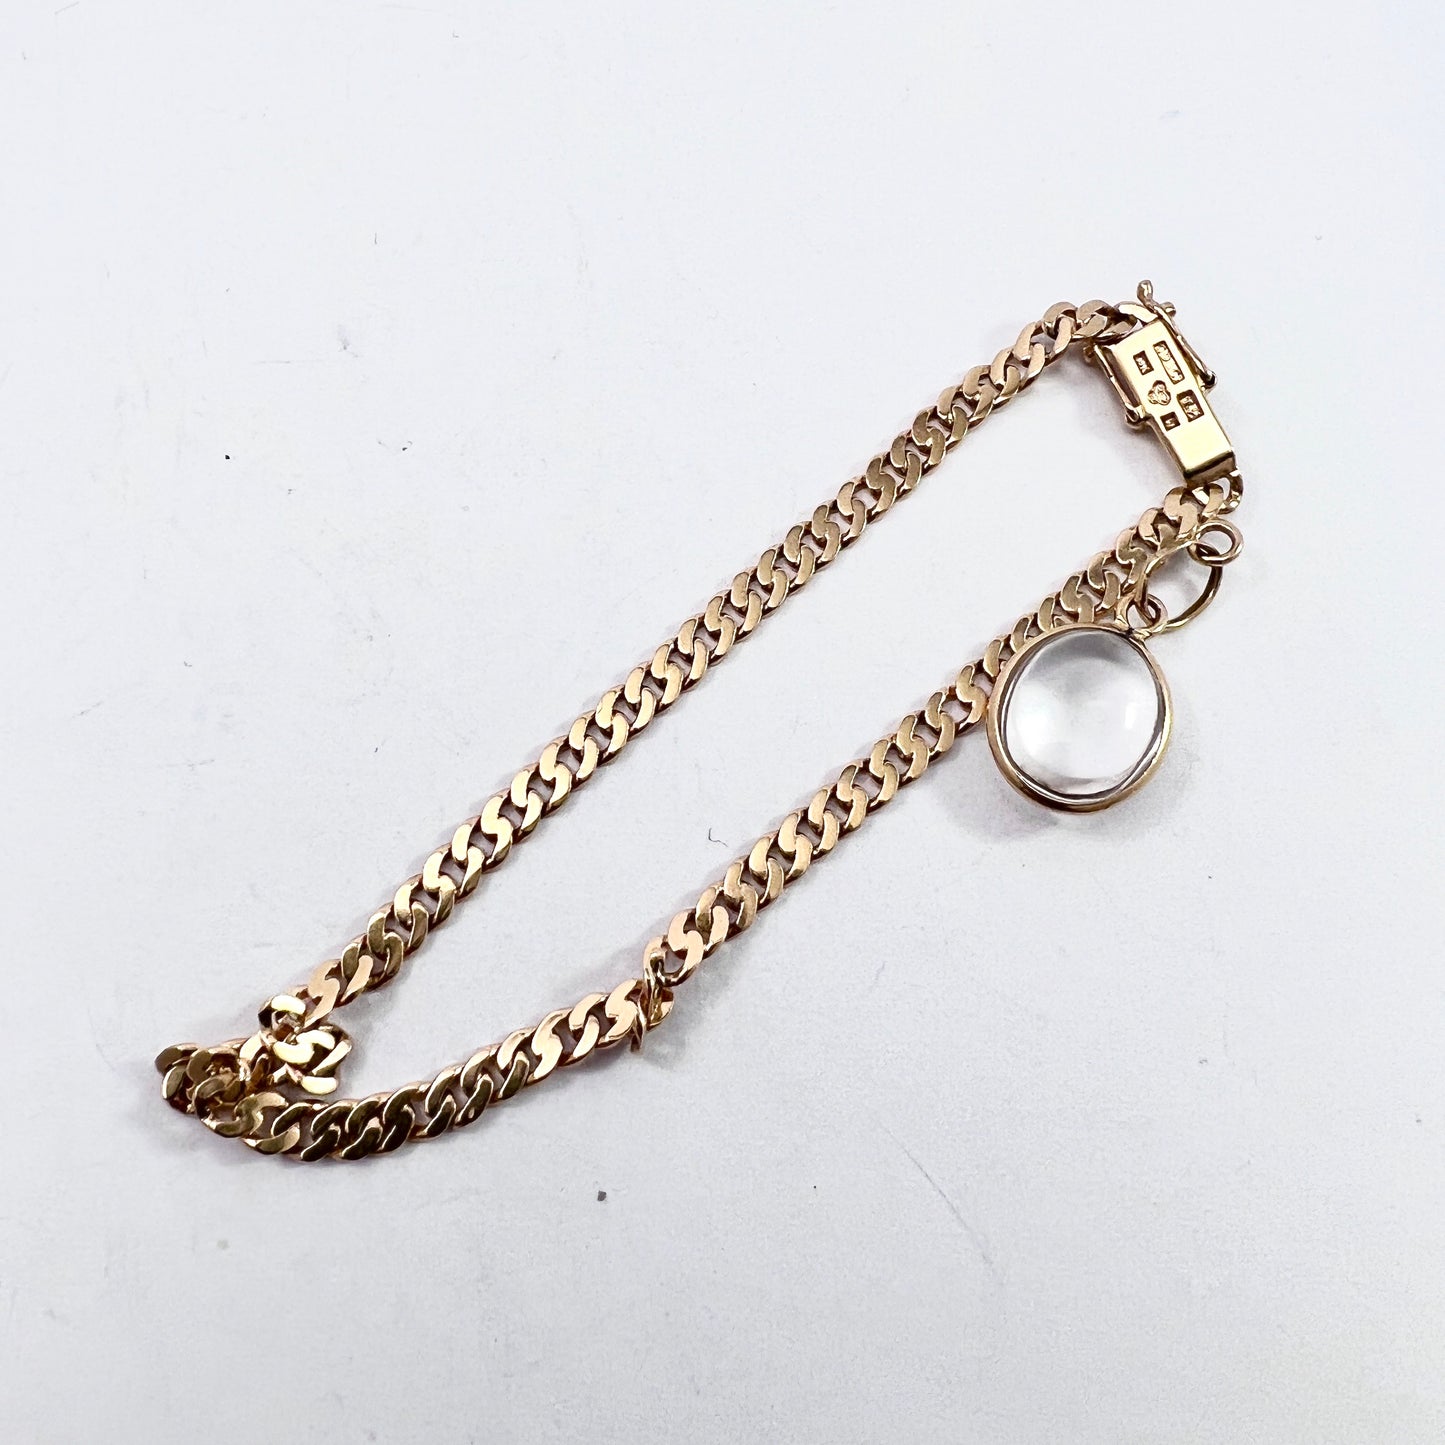 G Dahlgren, Sweden 1945. Vintage 18k Gold Original Pool of Light Rock Crystal Charm Bracelet.